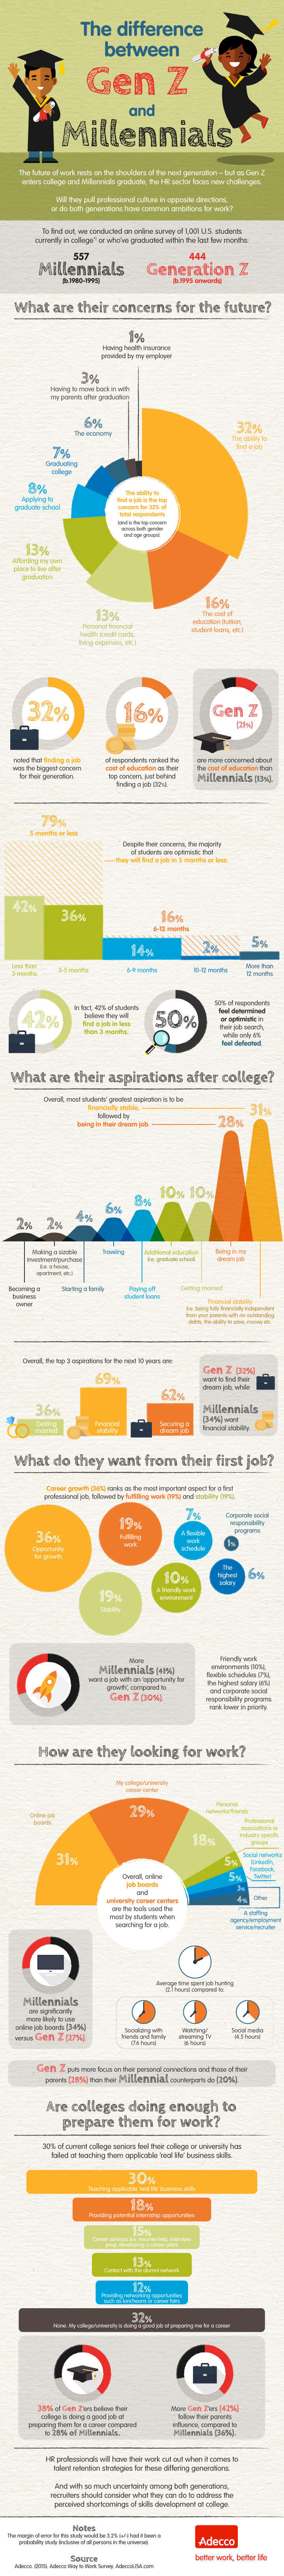 1433766464-future-work-millennials-generation-z-infographic